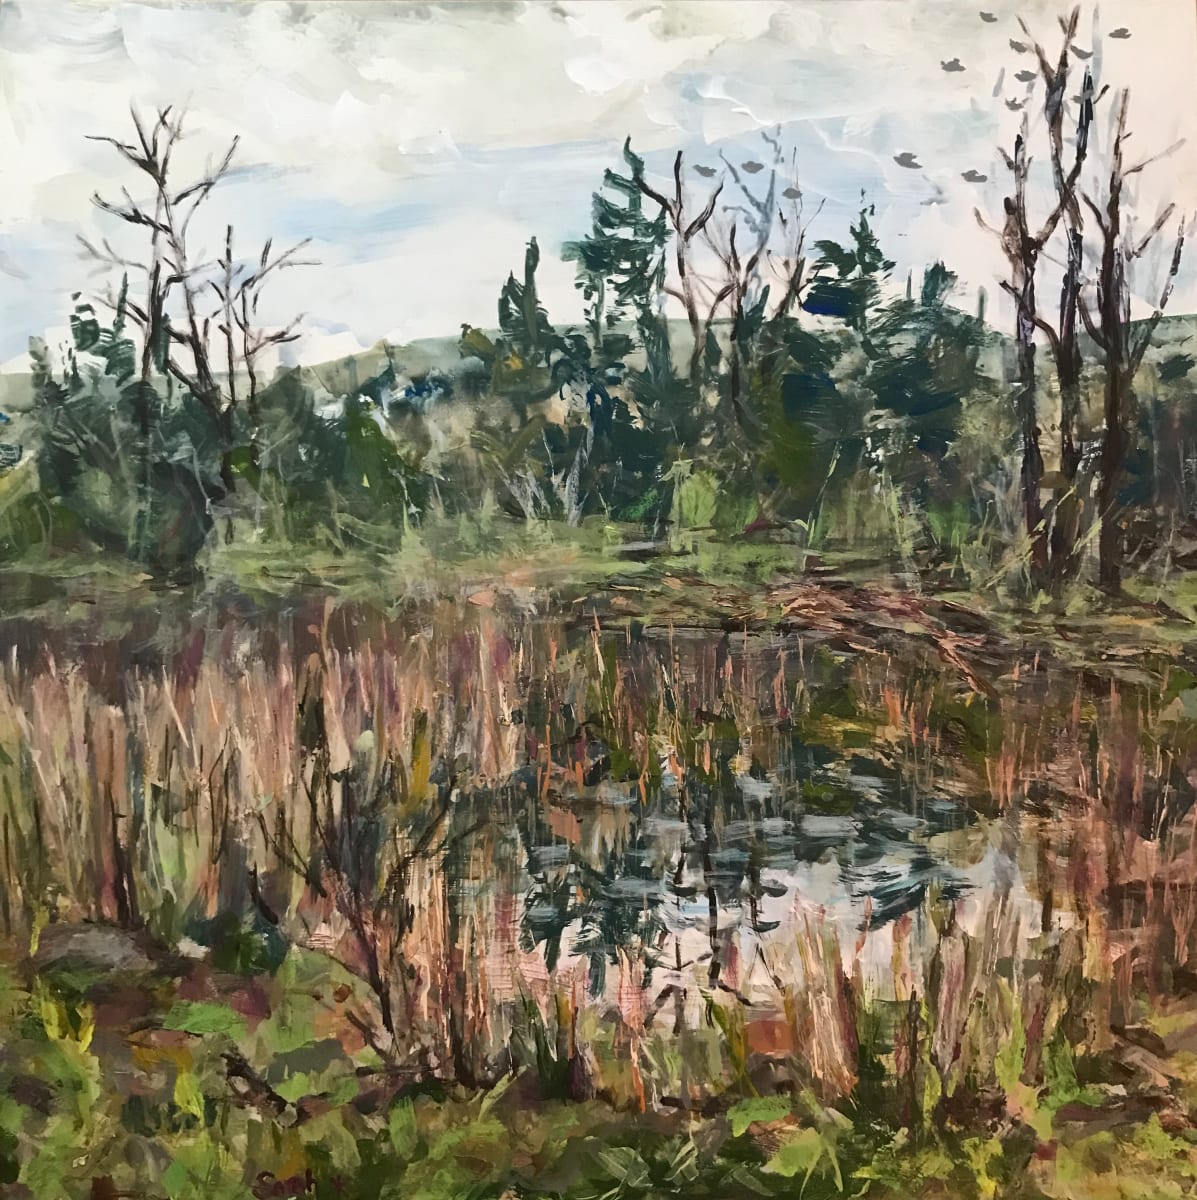 Marshland along hwy 50  Image: Marsh and beaver dam. Painted using brushes, scraper, palette knife